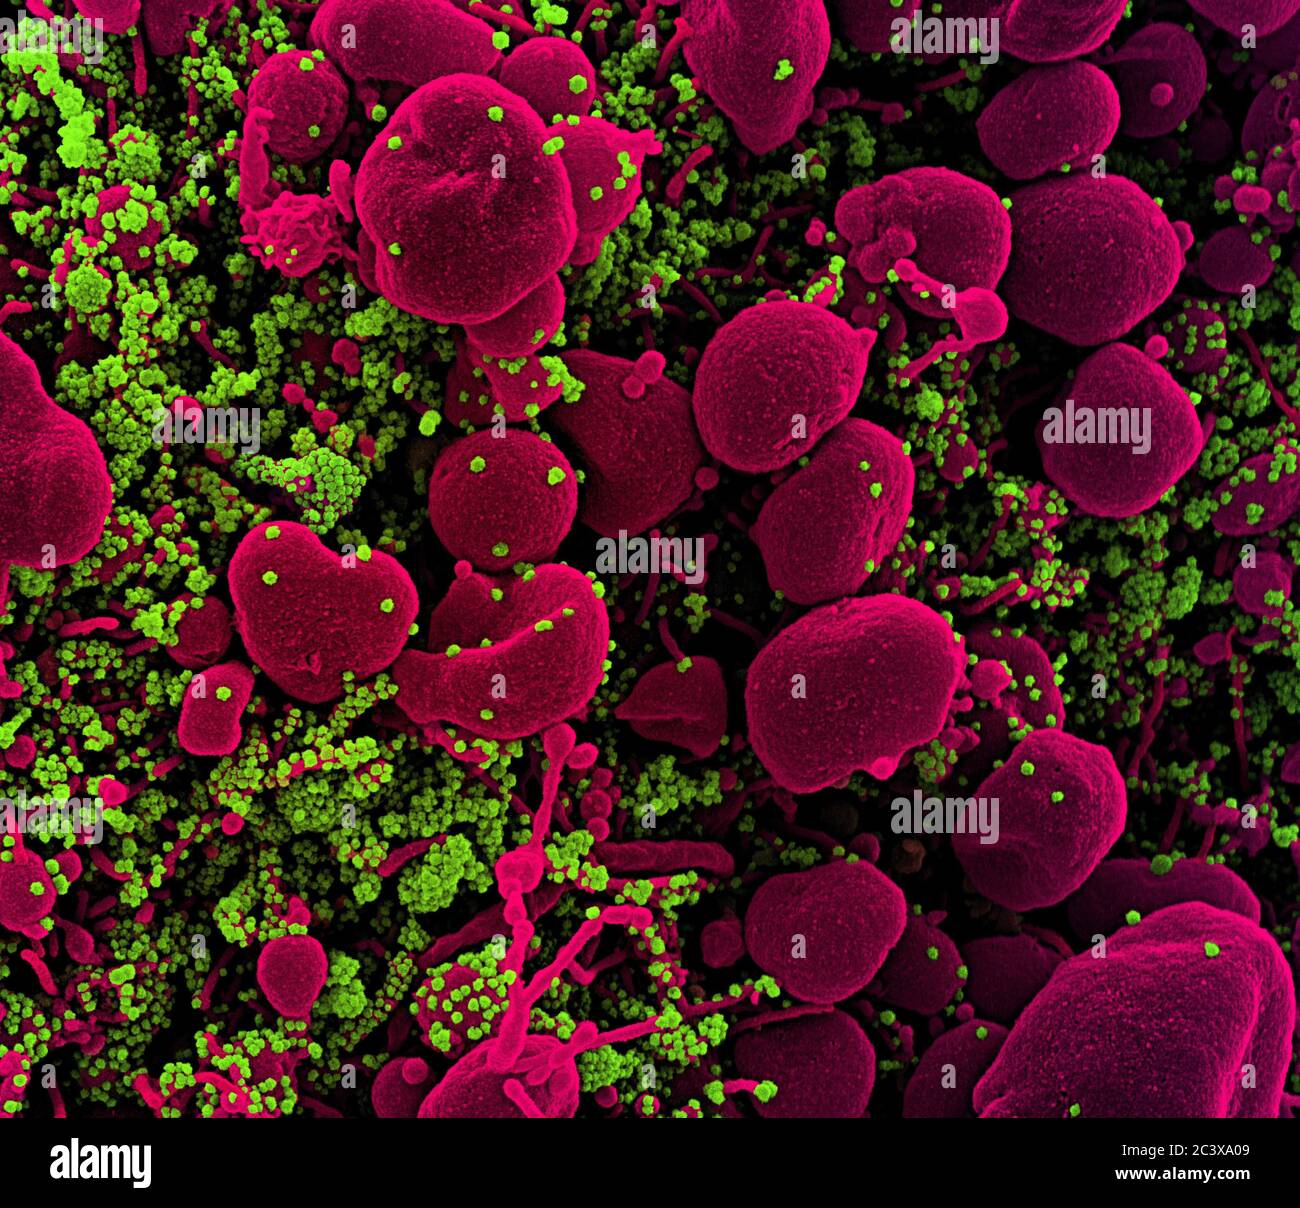 Novel Coronavirus SARS-COV-2 micrografia elettronica a scansione colored di una cellula apoptotica (rosa) fortemente infettata con particelle di virus SARS-COV-2 (verde), isolata da un campione di paziente. Immagine catturata presso il NIAID Integrated Research Facility (IRF) di Fort Detrick, Maryland. Foto Stock